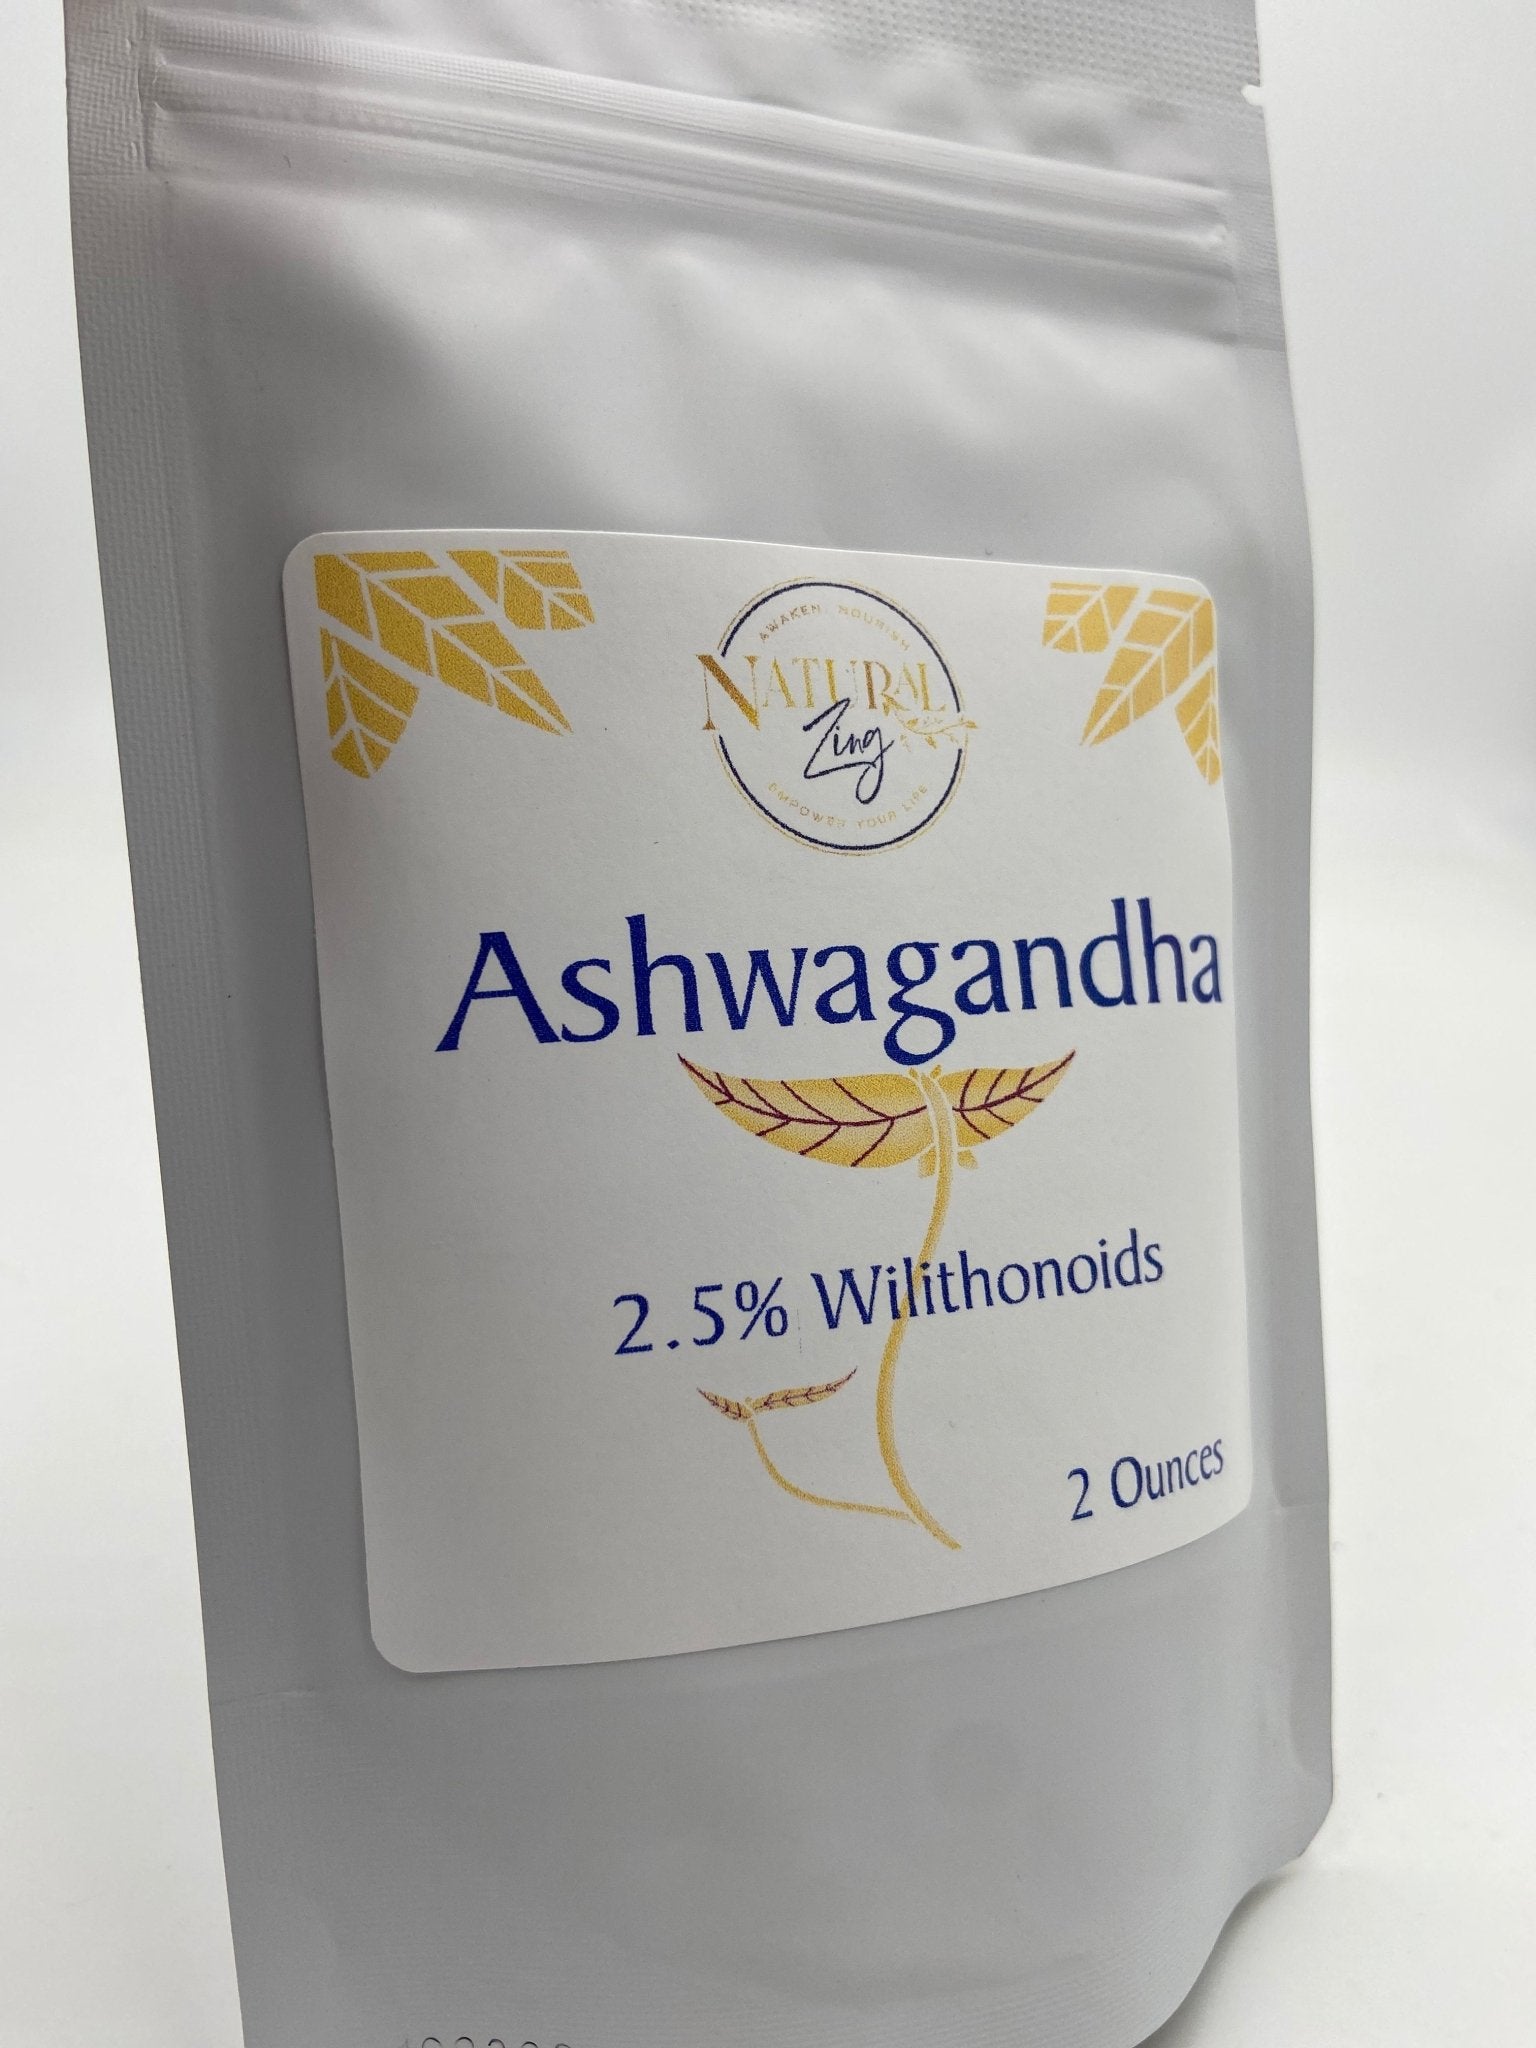 Ashwagandha Extract Powder - Natural Zing